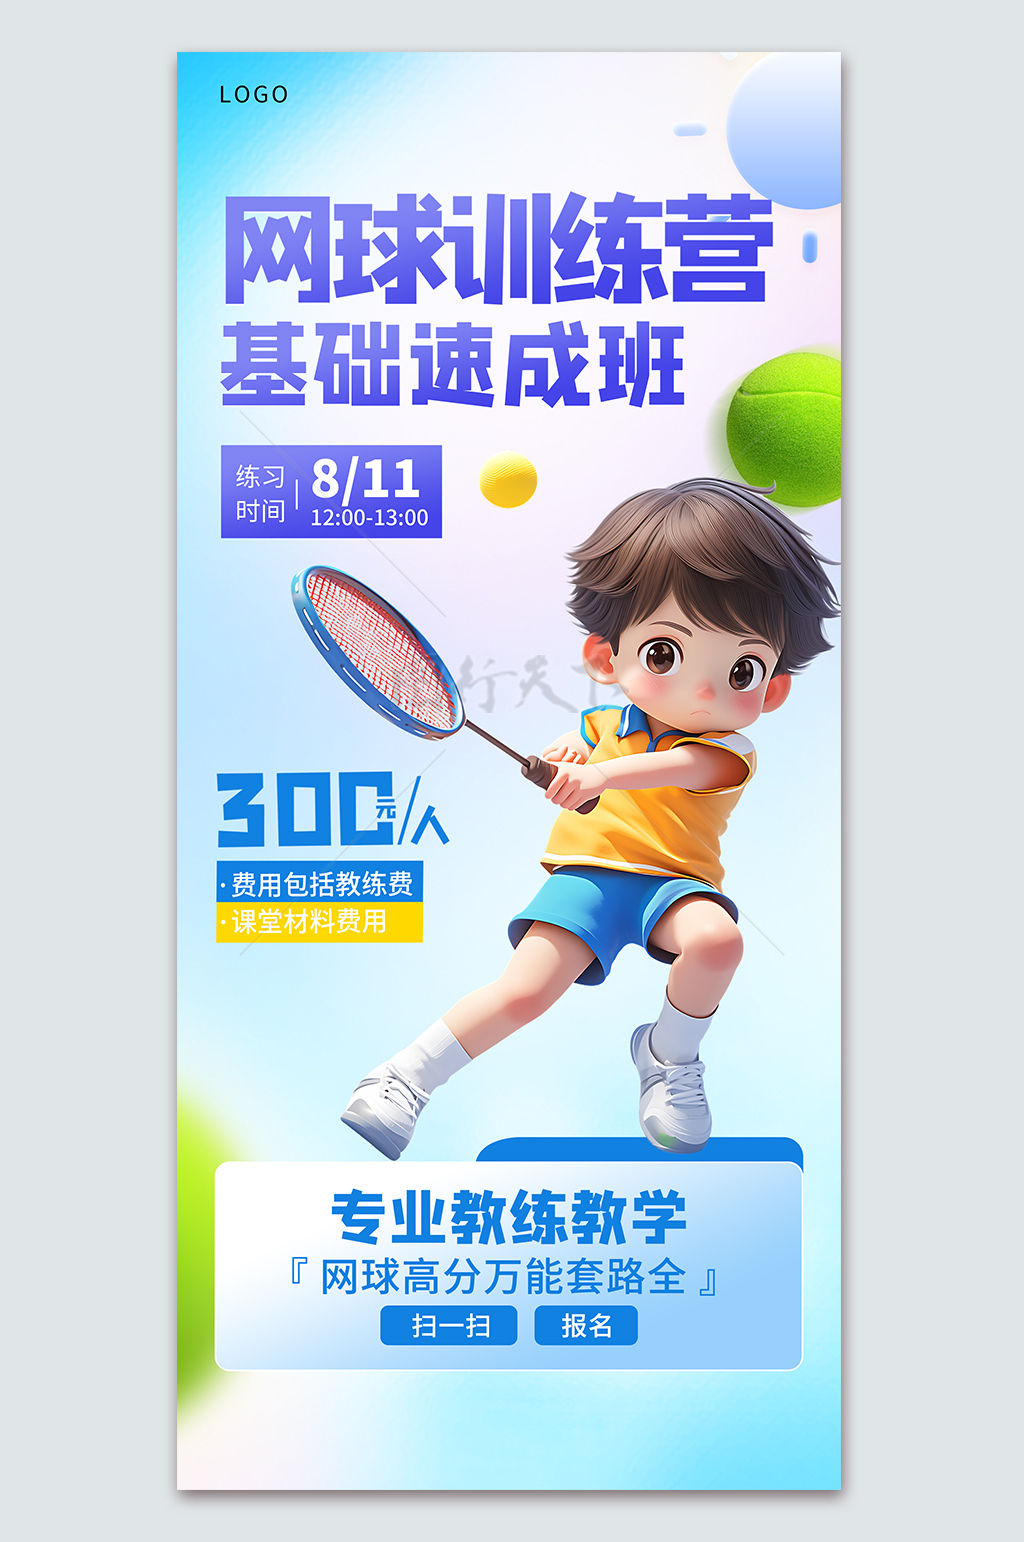 网球训练营基础速成班暑期班宣传海报